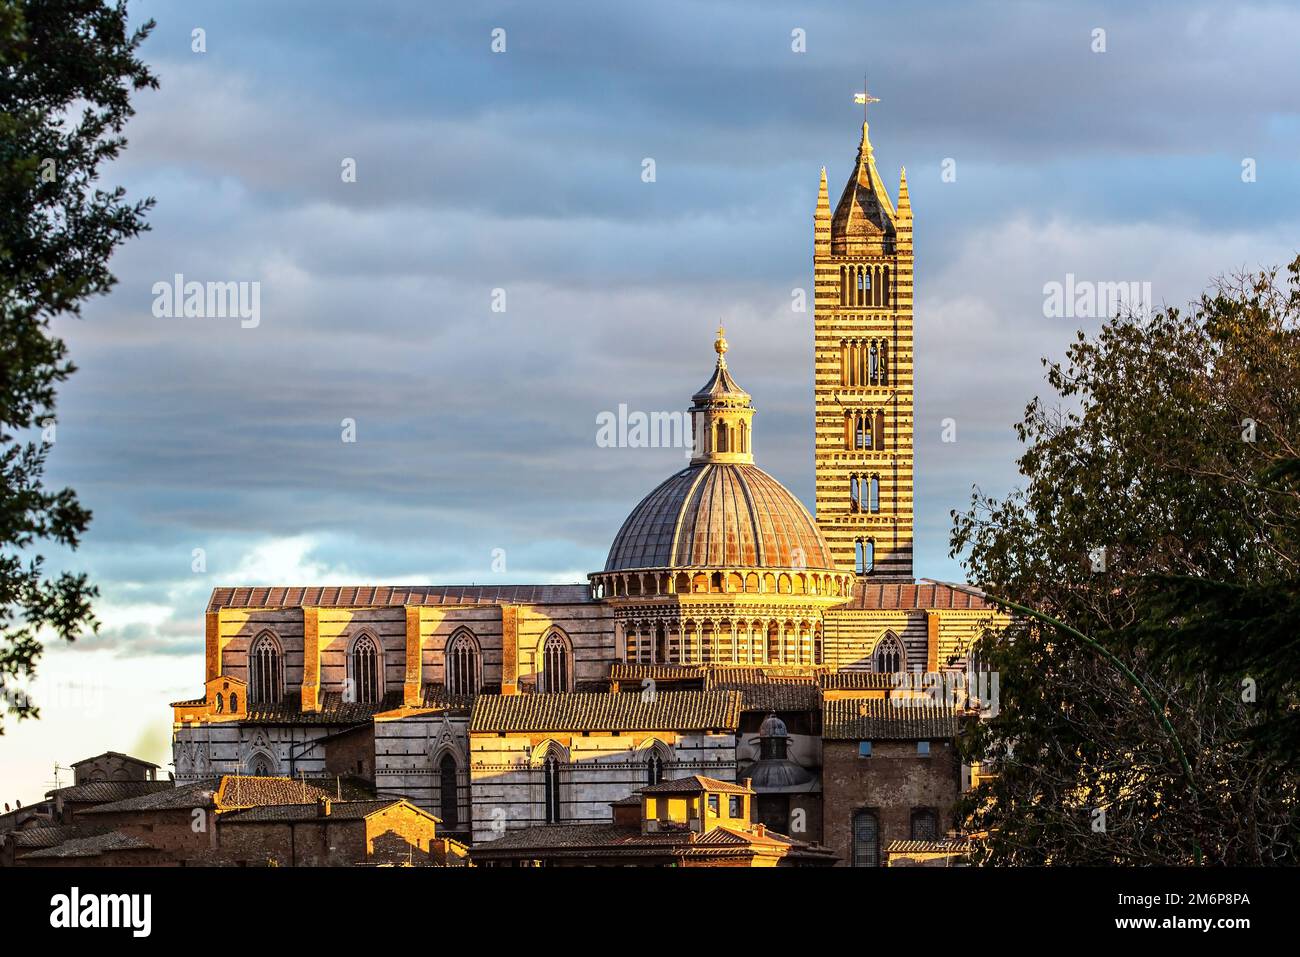 Tramonto. Il centro storico di Siena. Foto Stock